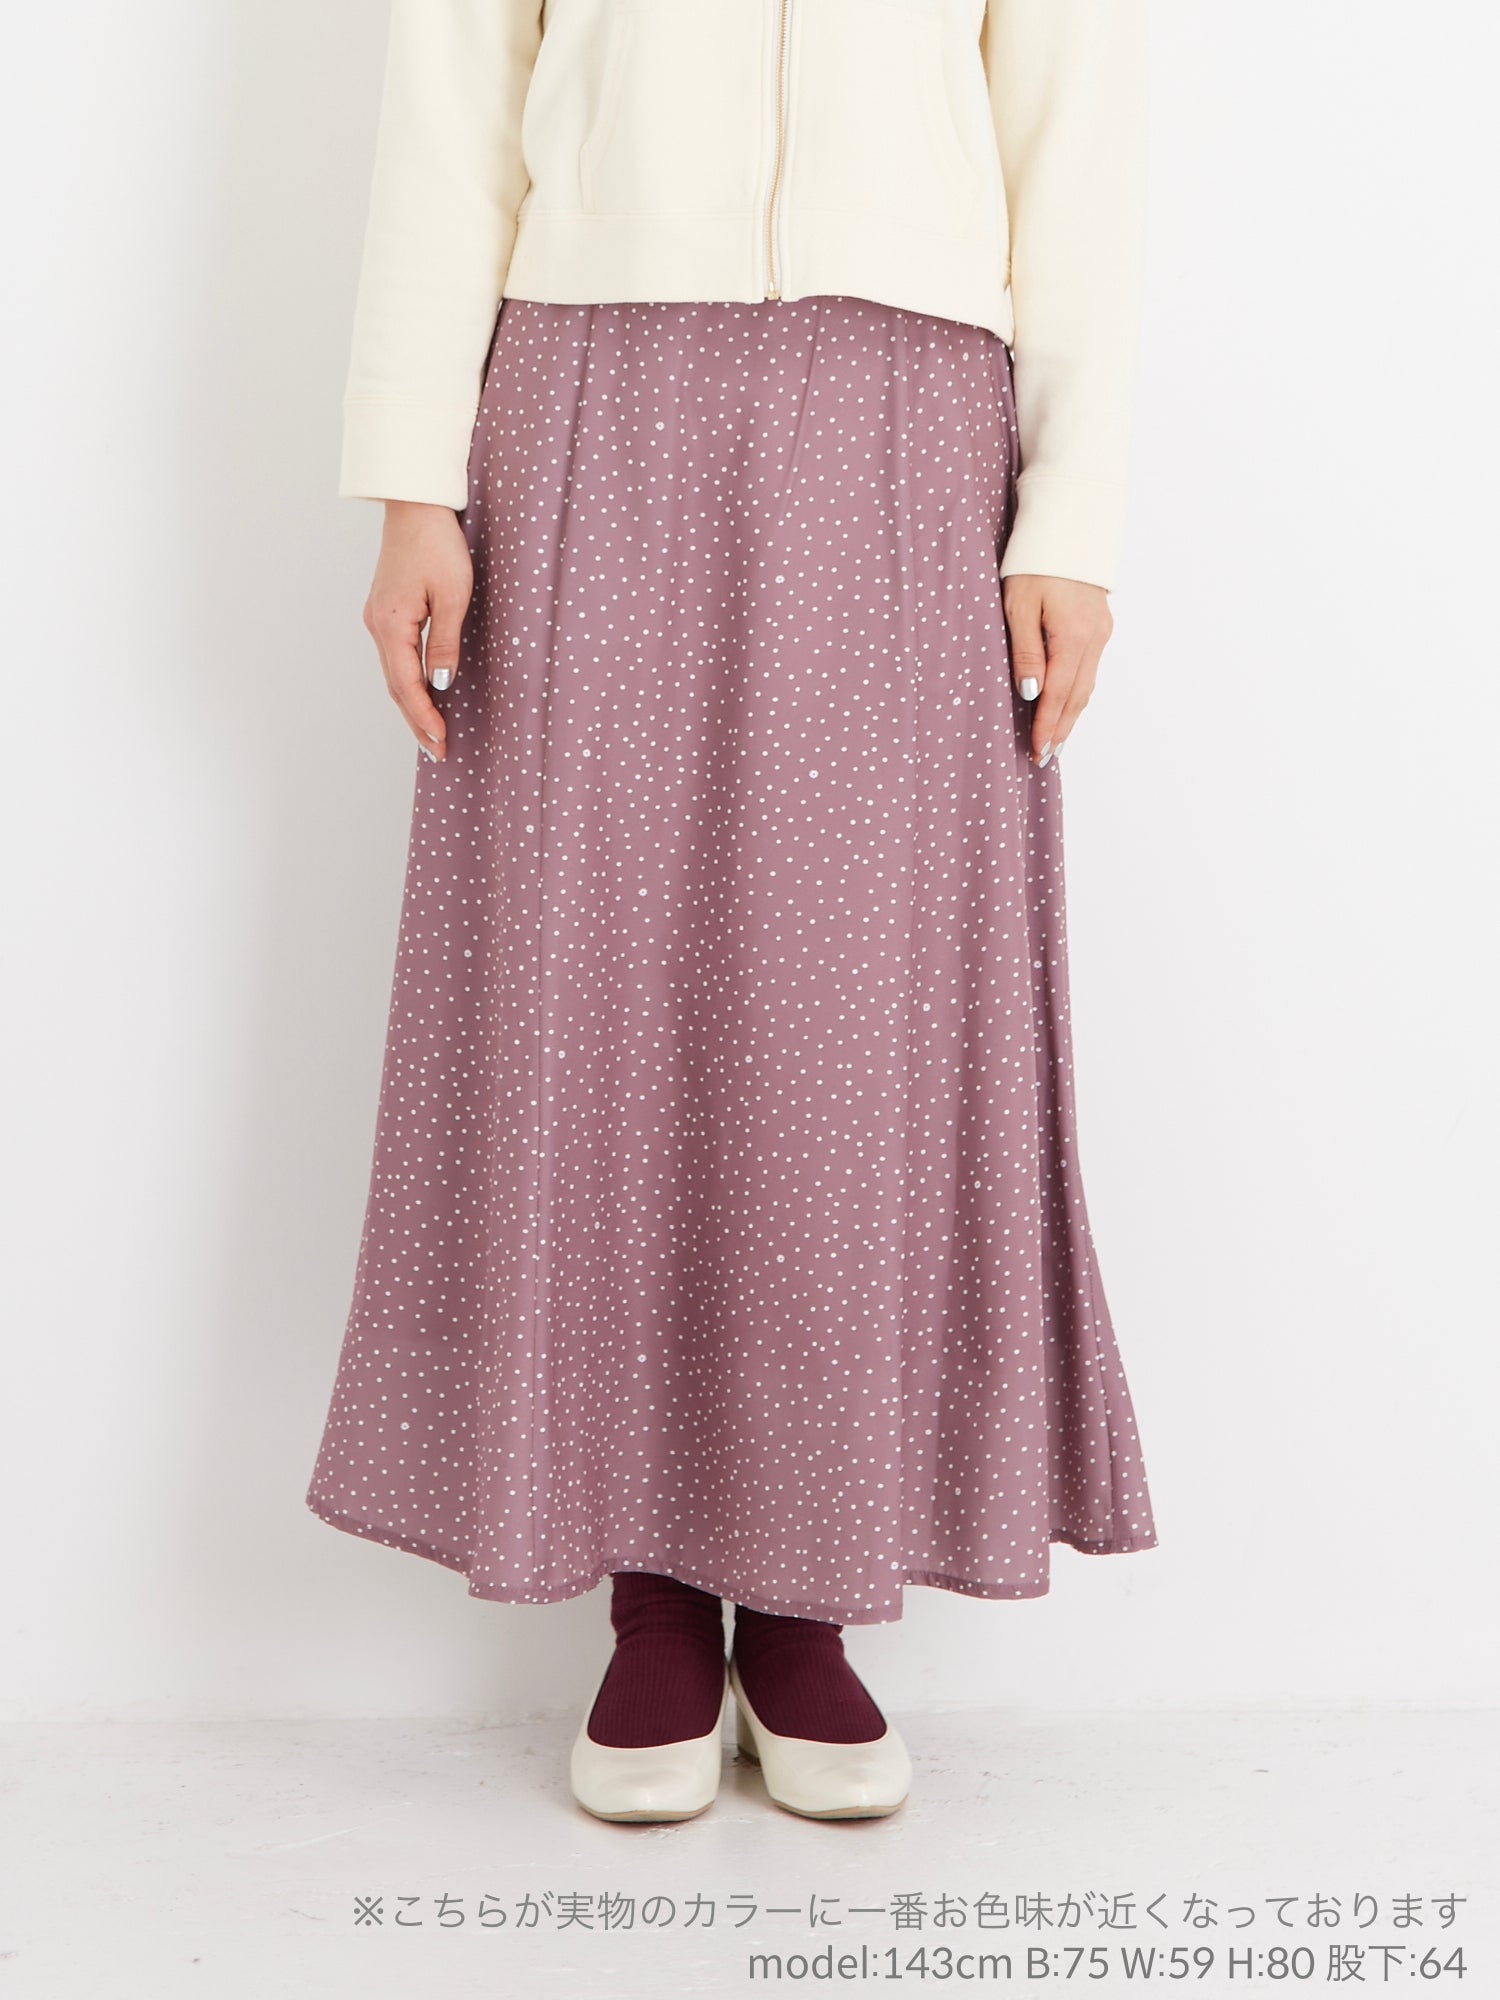 フラワードットスカート|小柄向け女性ブランド – COHINA STORE